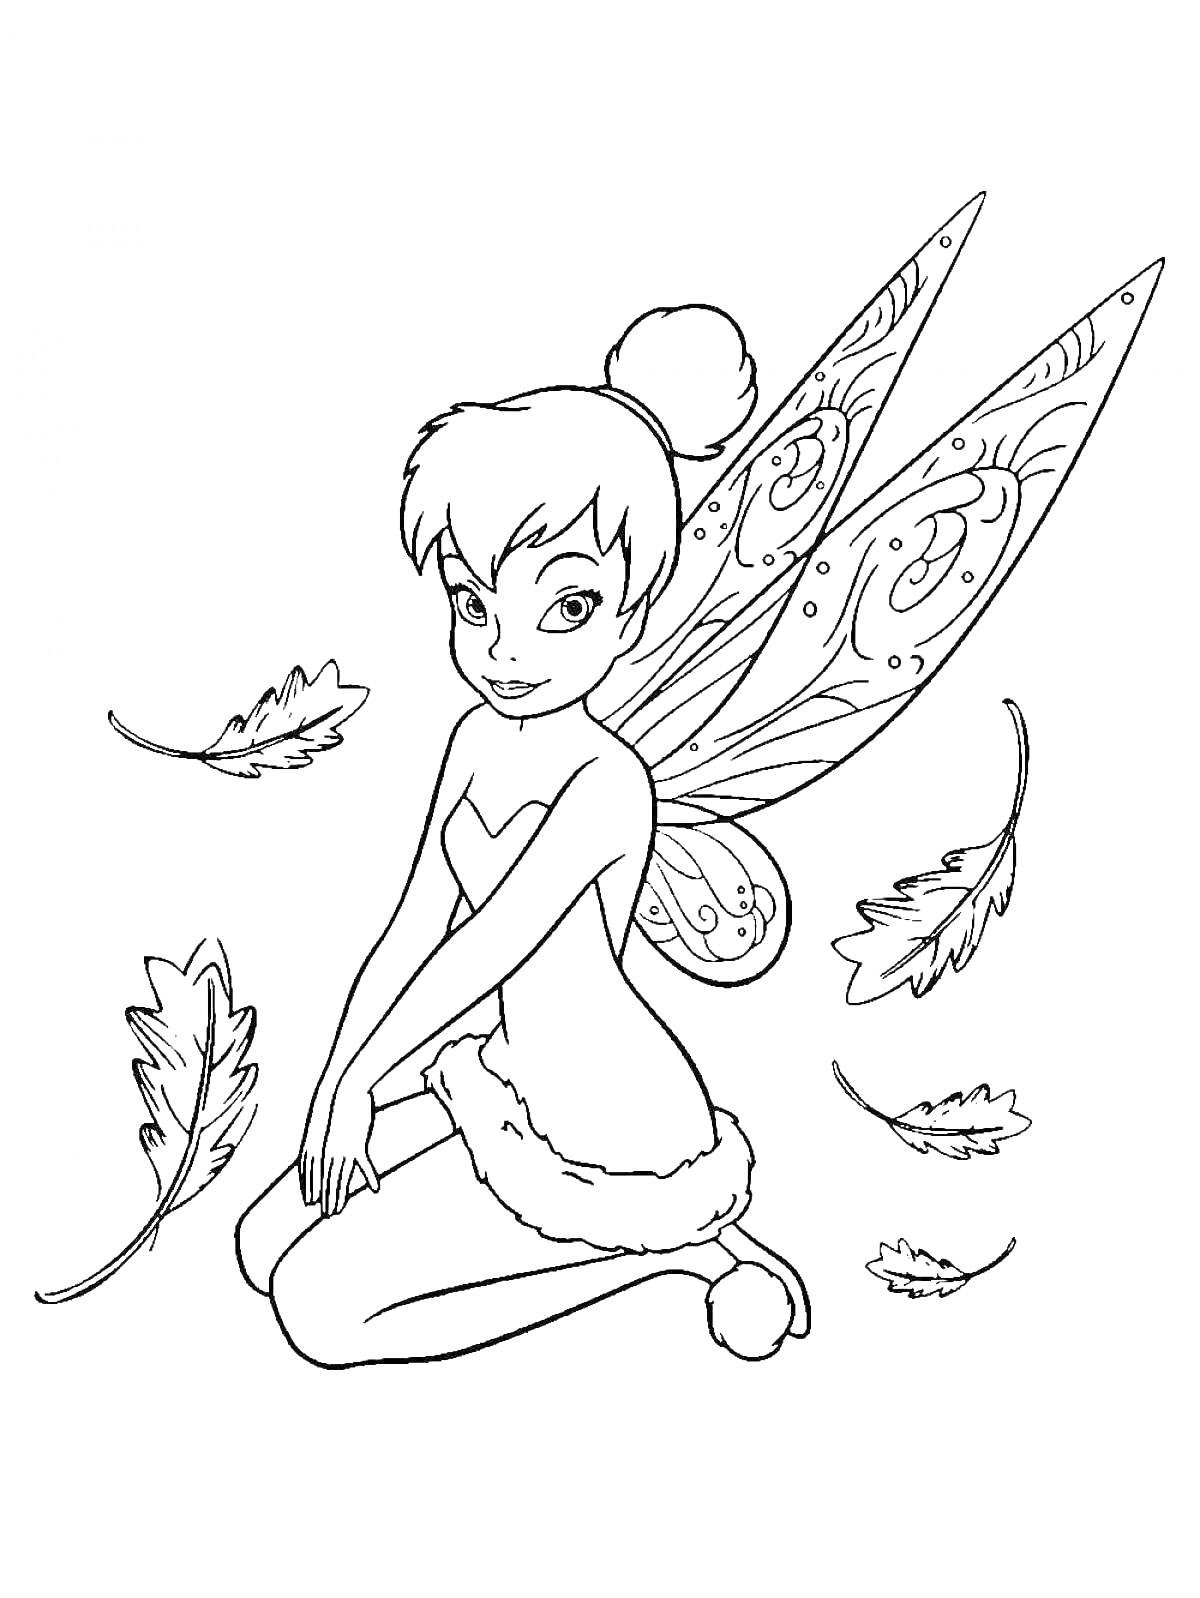 Раскраска Фея Динь-Динь сидит на корточках с узорчатыми крыльями и пушистыми элементами одежды, листья вокруг